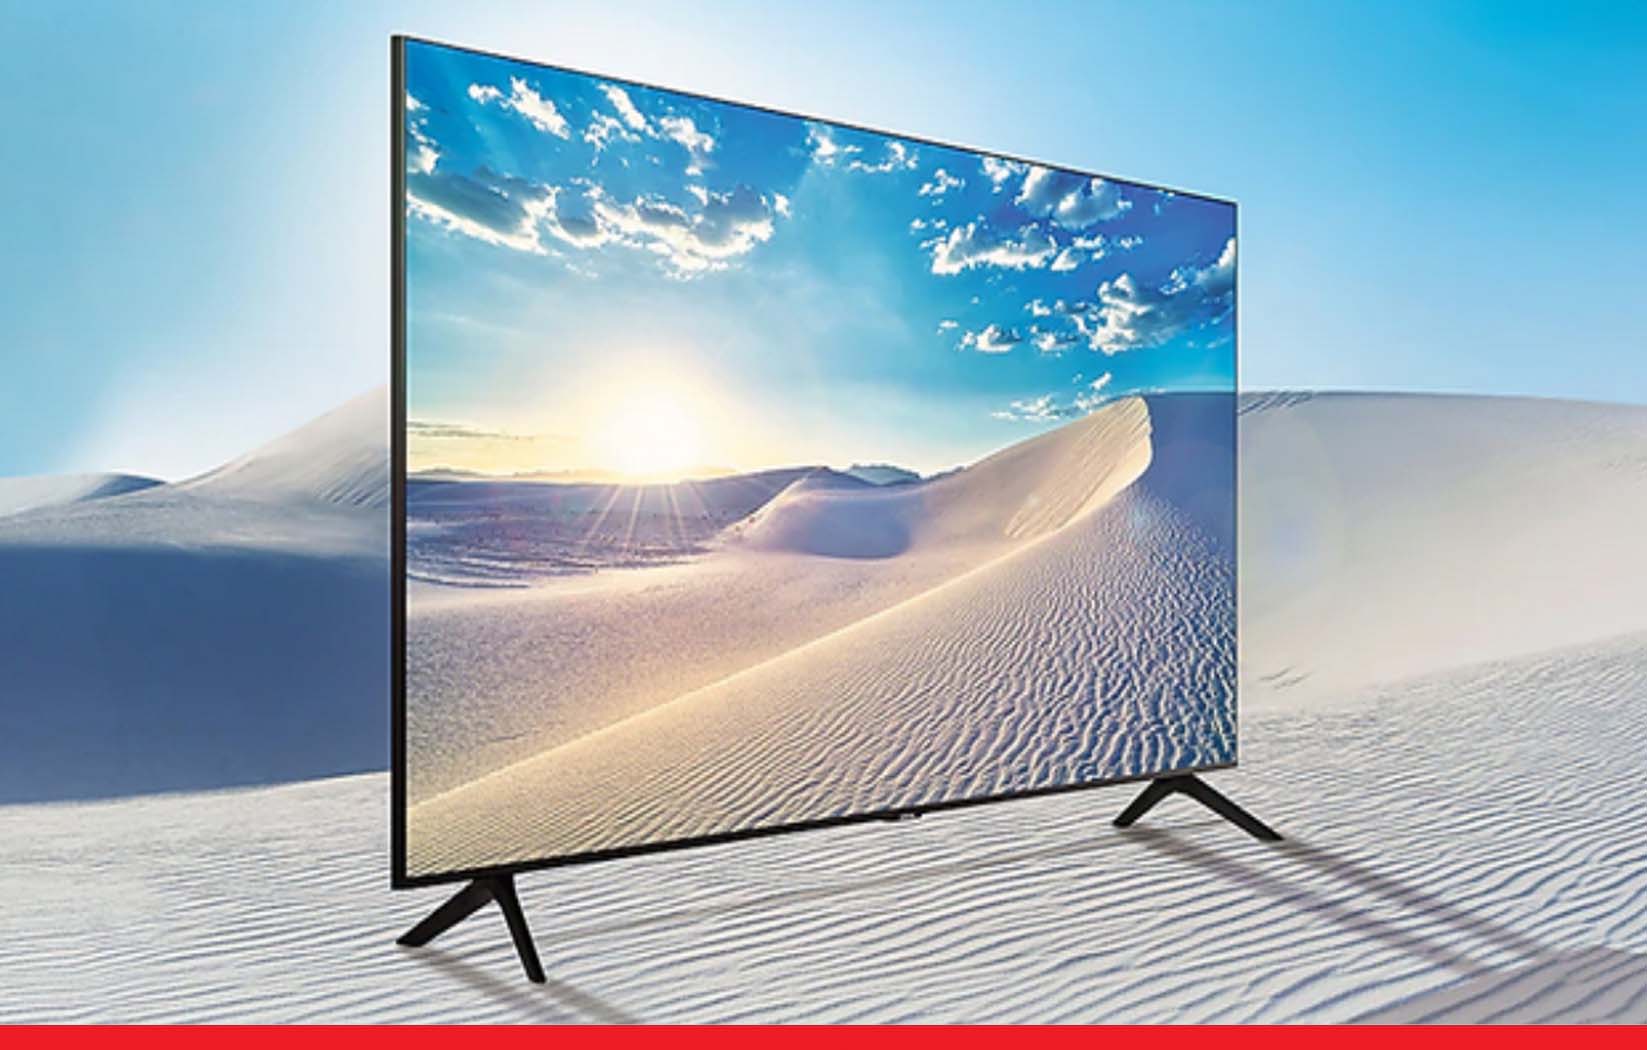 सेमसंग ने लॉन्च किया 43 इंच का शानदार स्मार्ट 4K टीवी